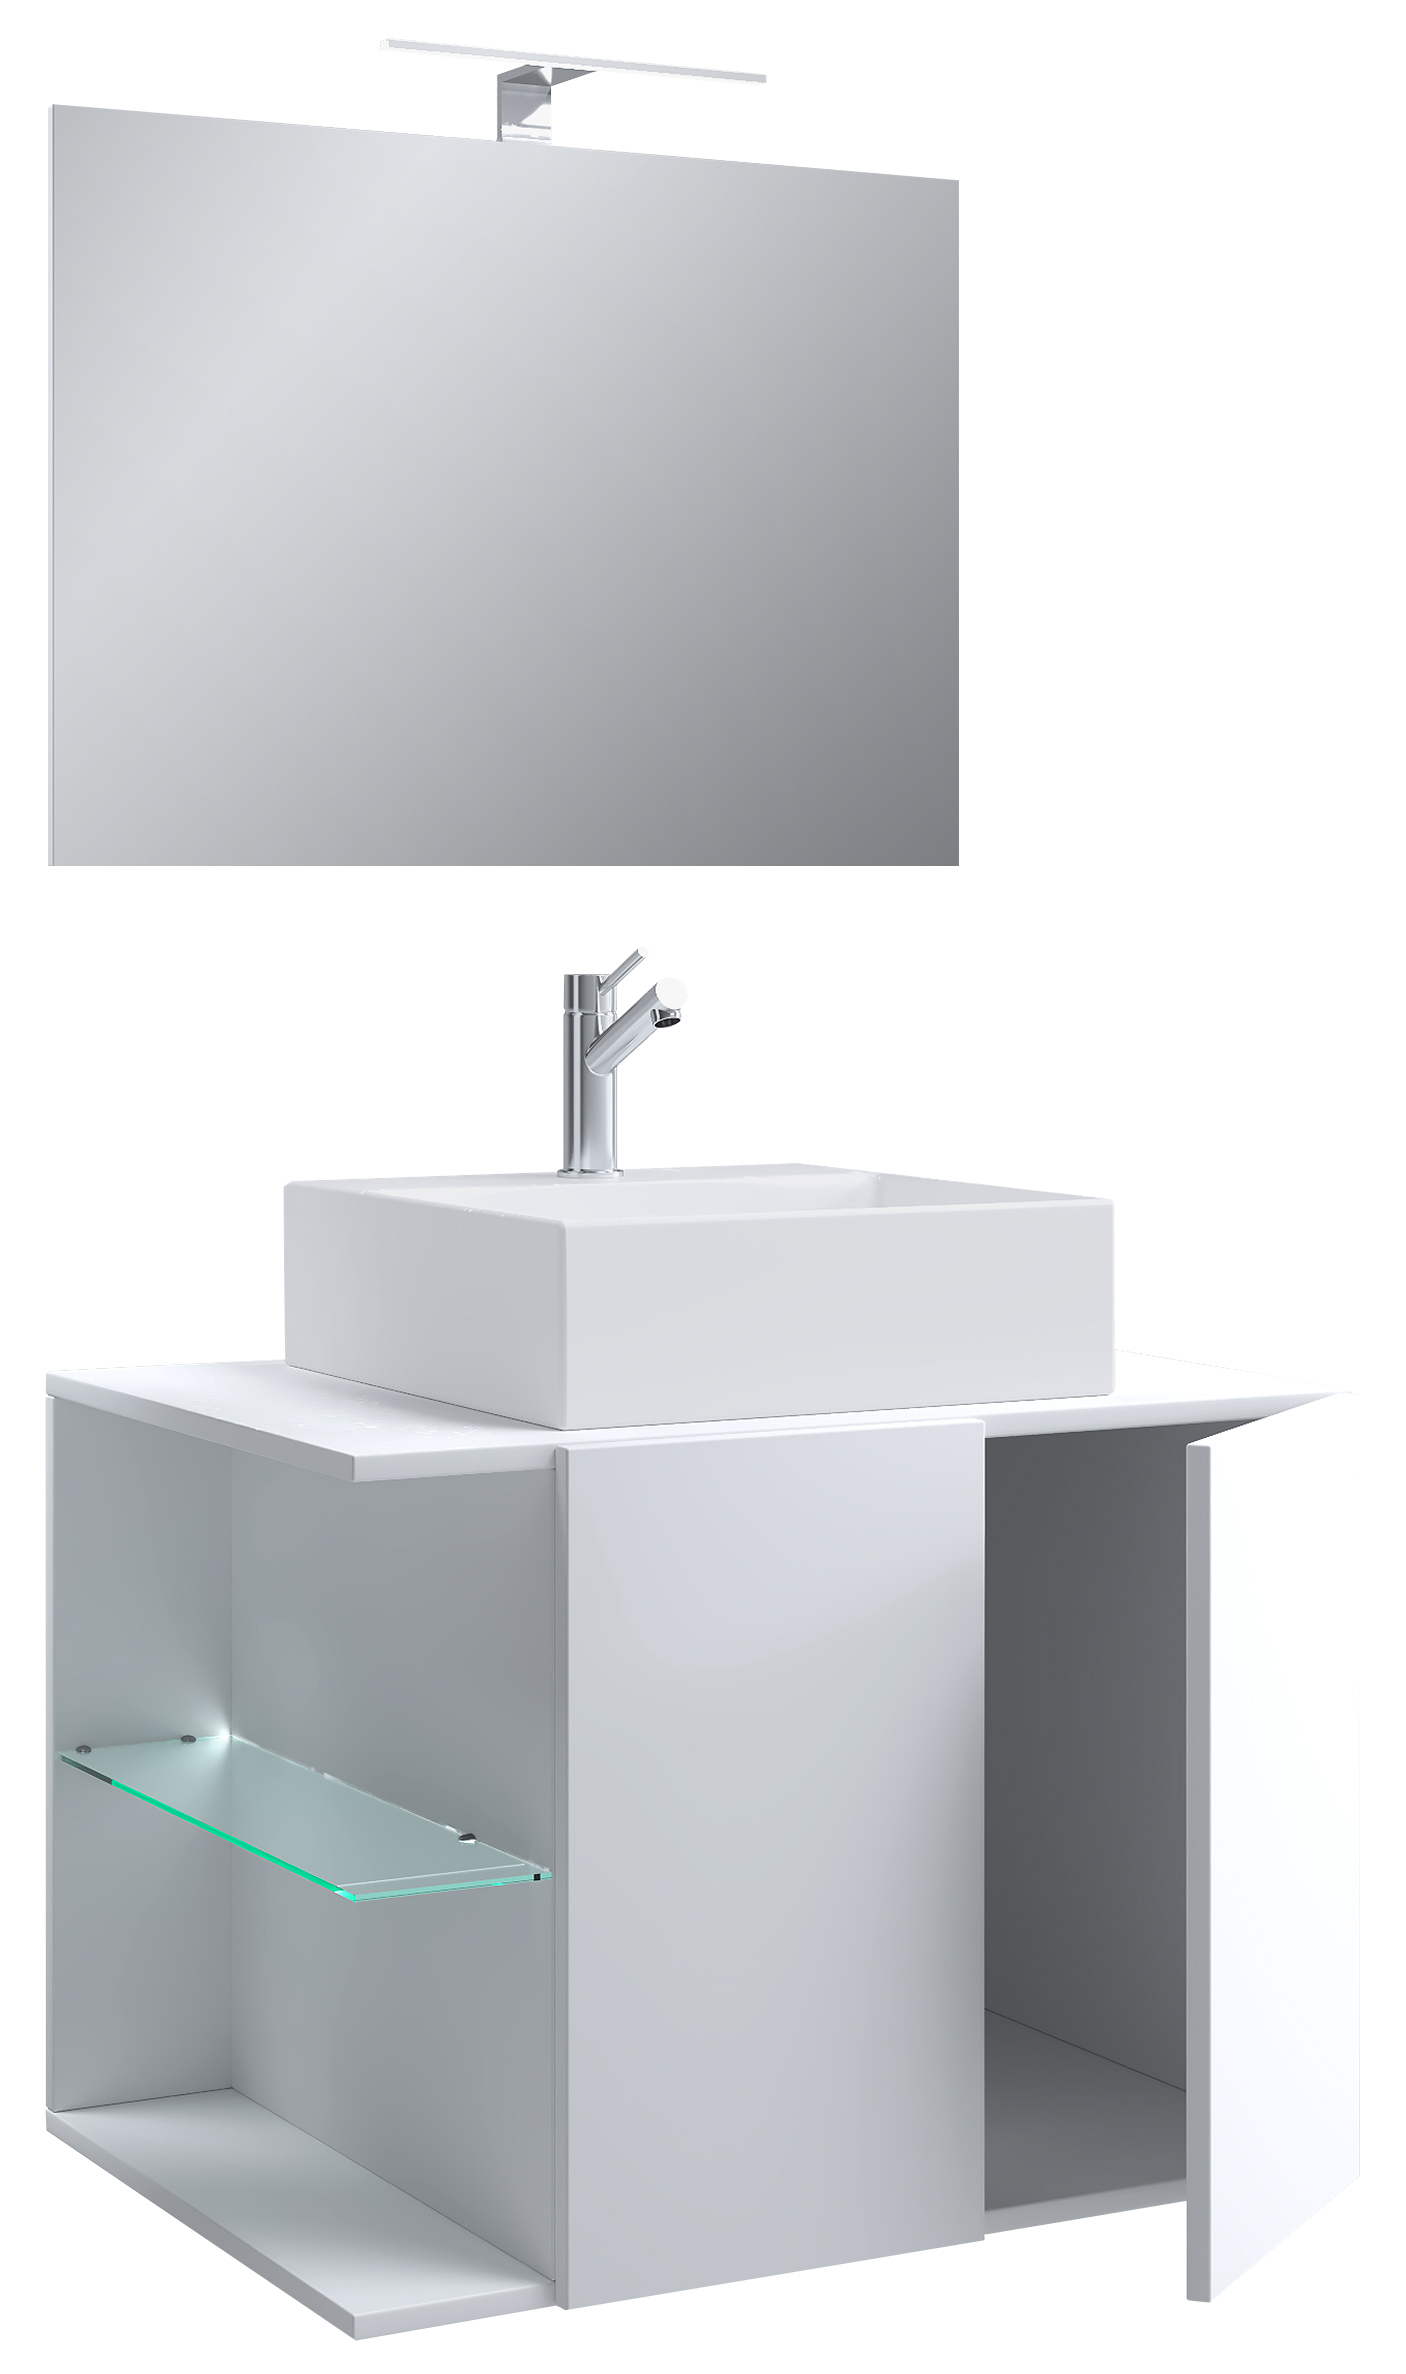 VCM NORDIC Hausa 2 døre 73 3-delt vaskeplads, m. spejl, keramik håndvask, 1 glashylde - hvid melamin